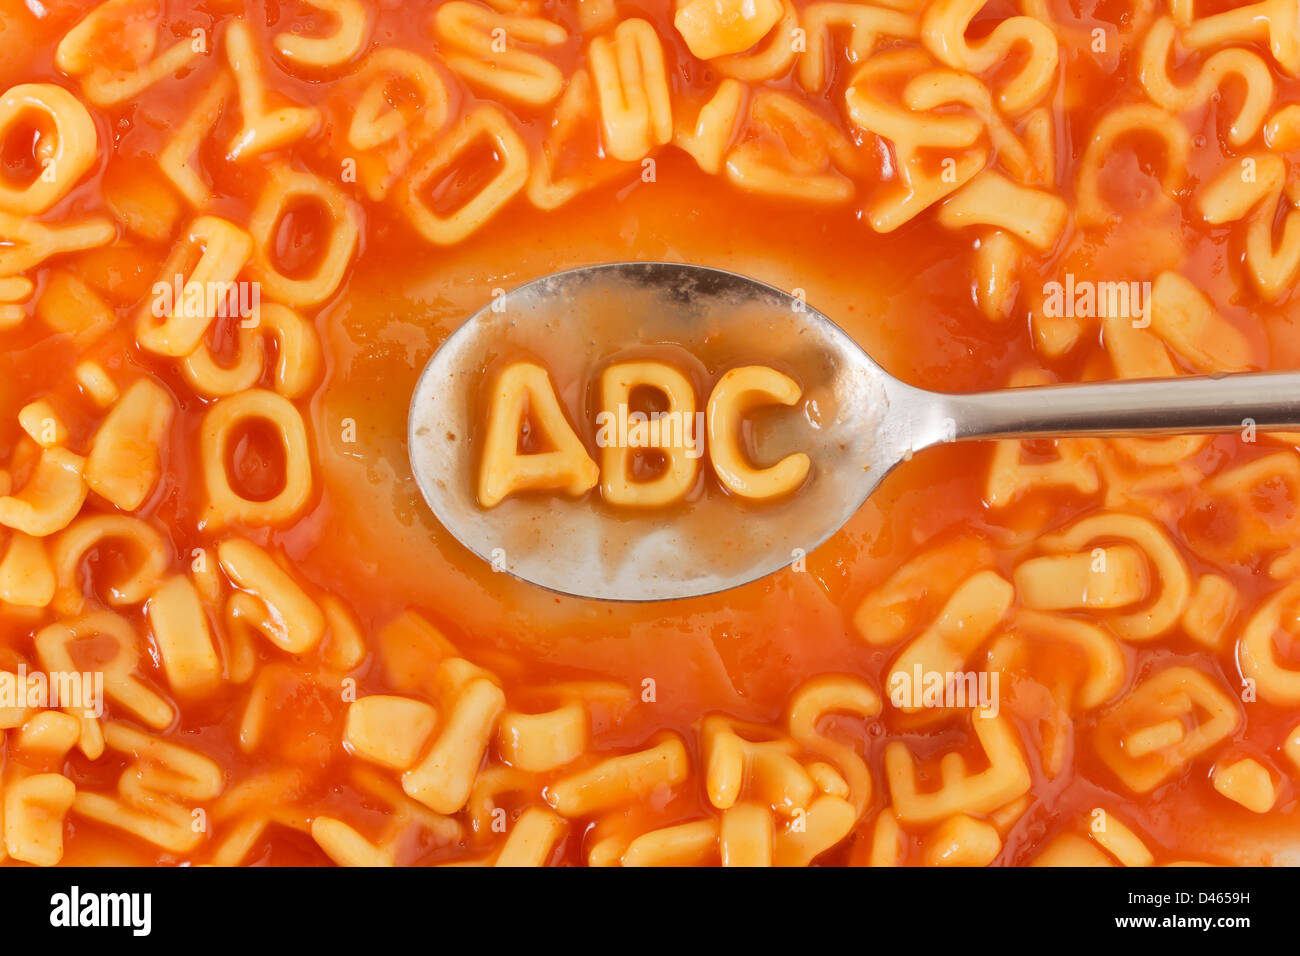 La pasta a forma di lettere ABC su un cucchiaio entro la pasta lettere sagomate in salsa di pomodoro Foto Stock